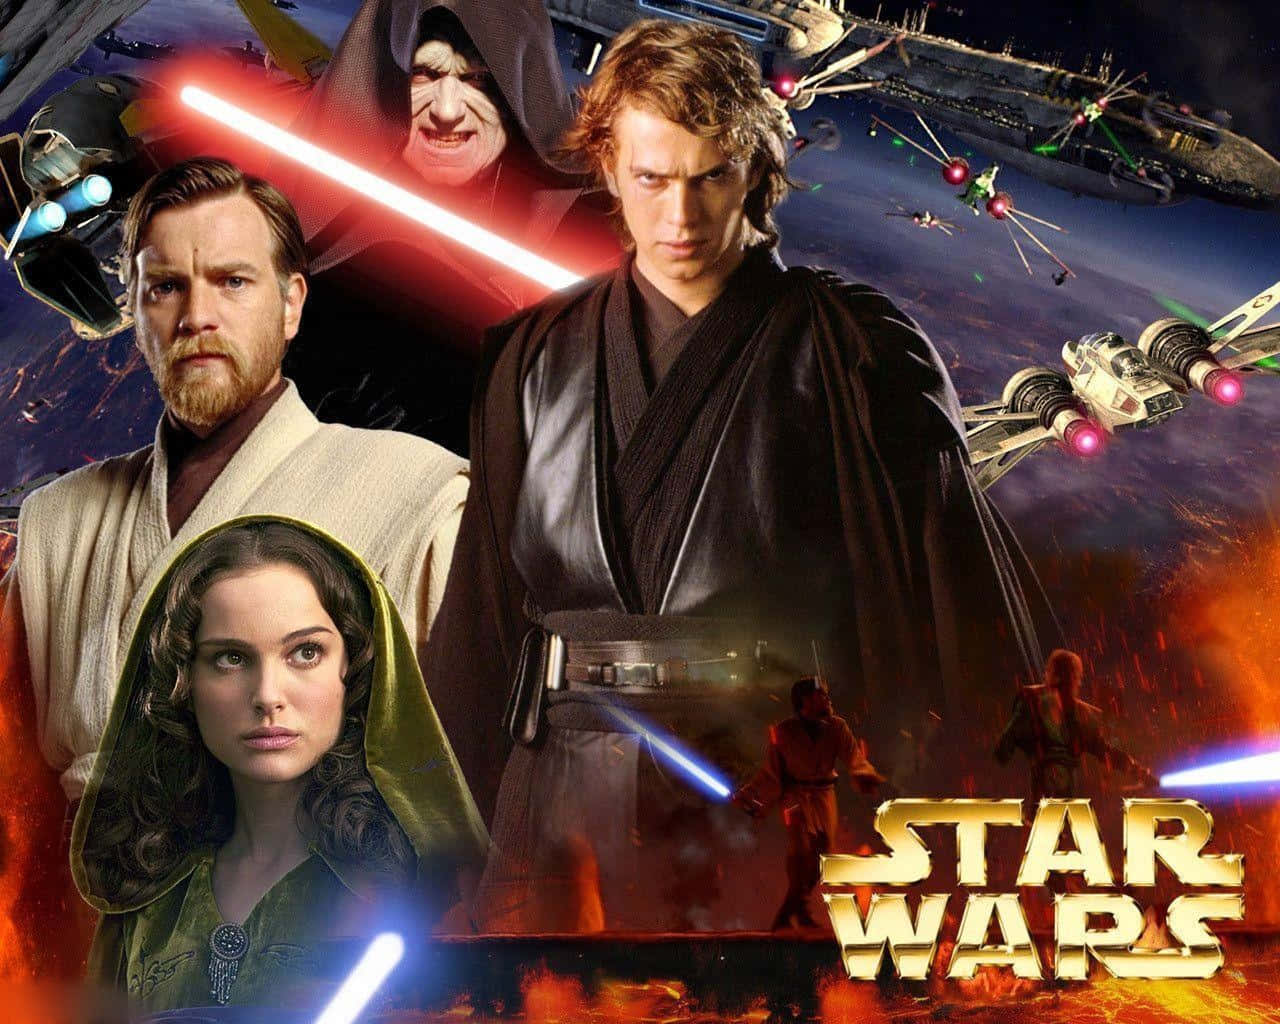 Personagensda Trilogia Prequel De Star Wars Em Uma Imagem Do Espaço Sideral.